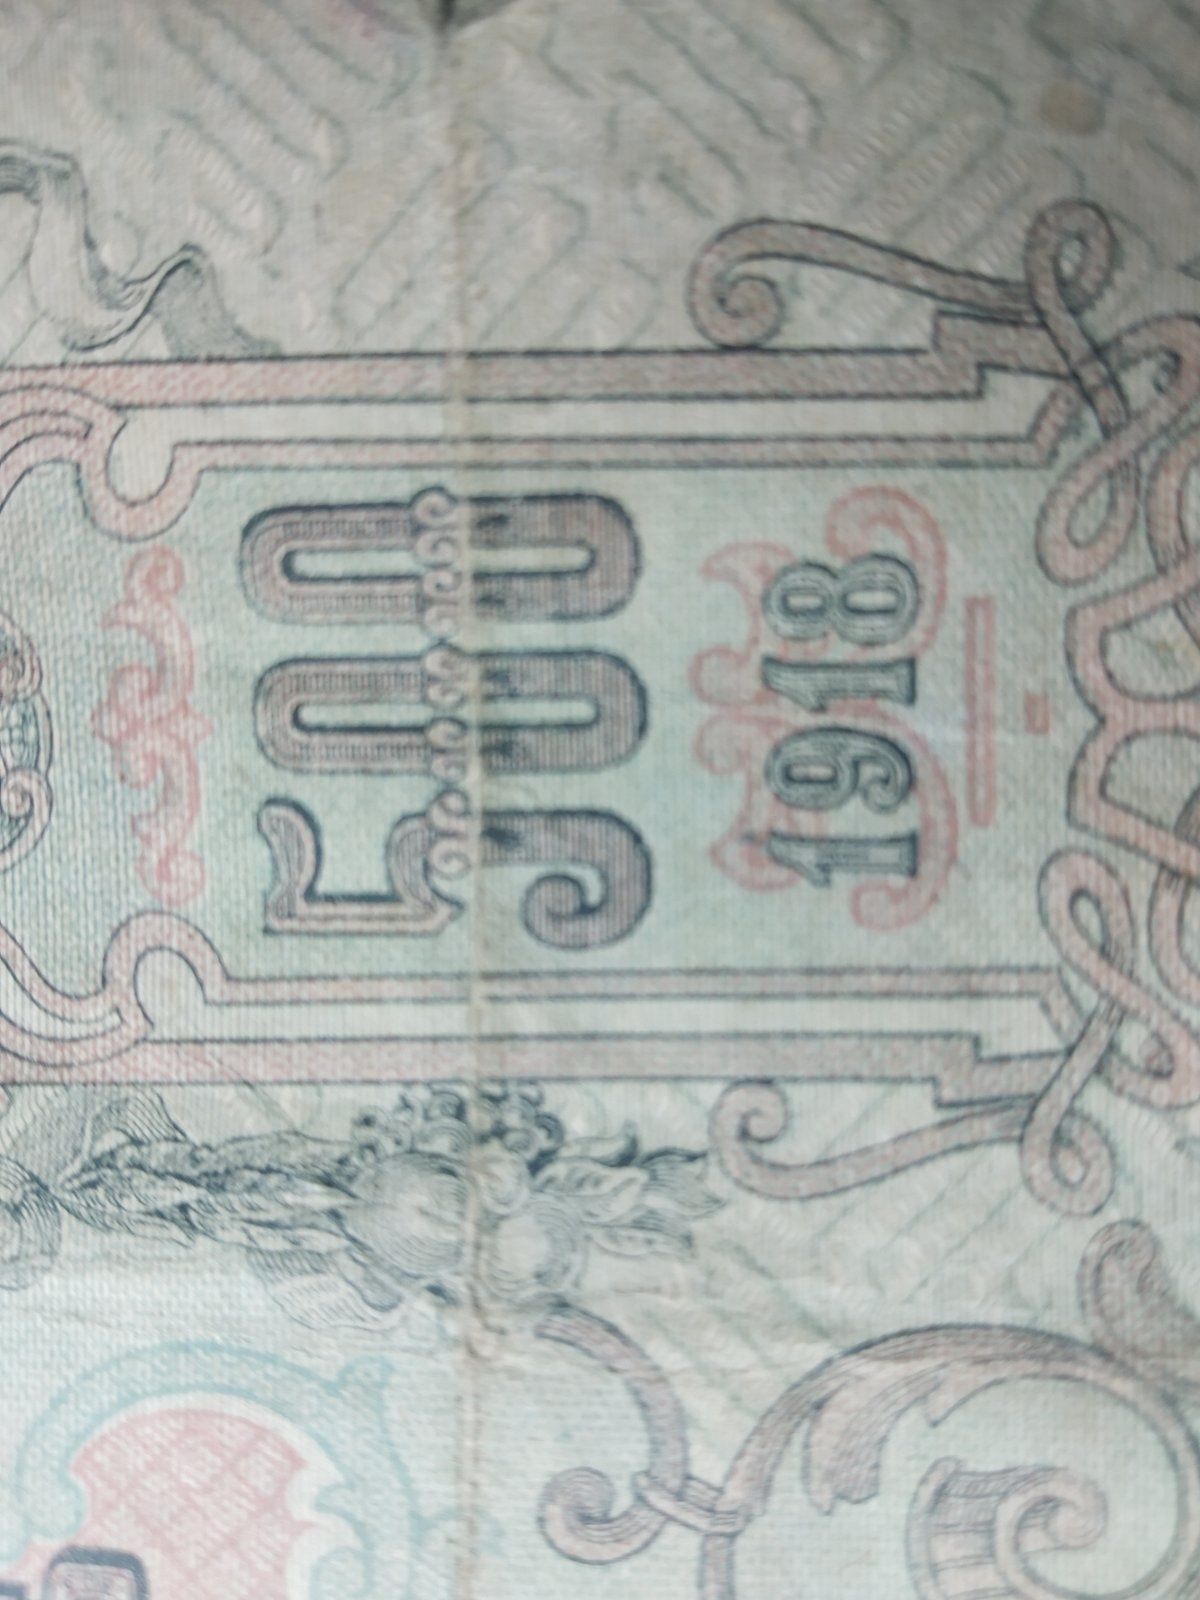 500 Руски рубли от 1918г. Банкнота на над 100г.